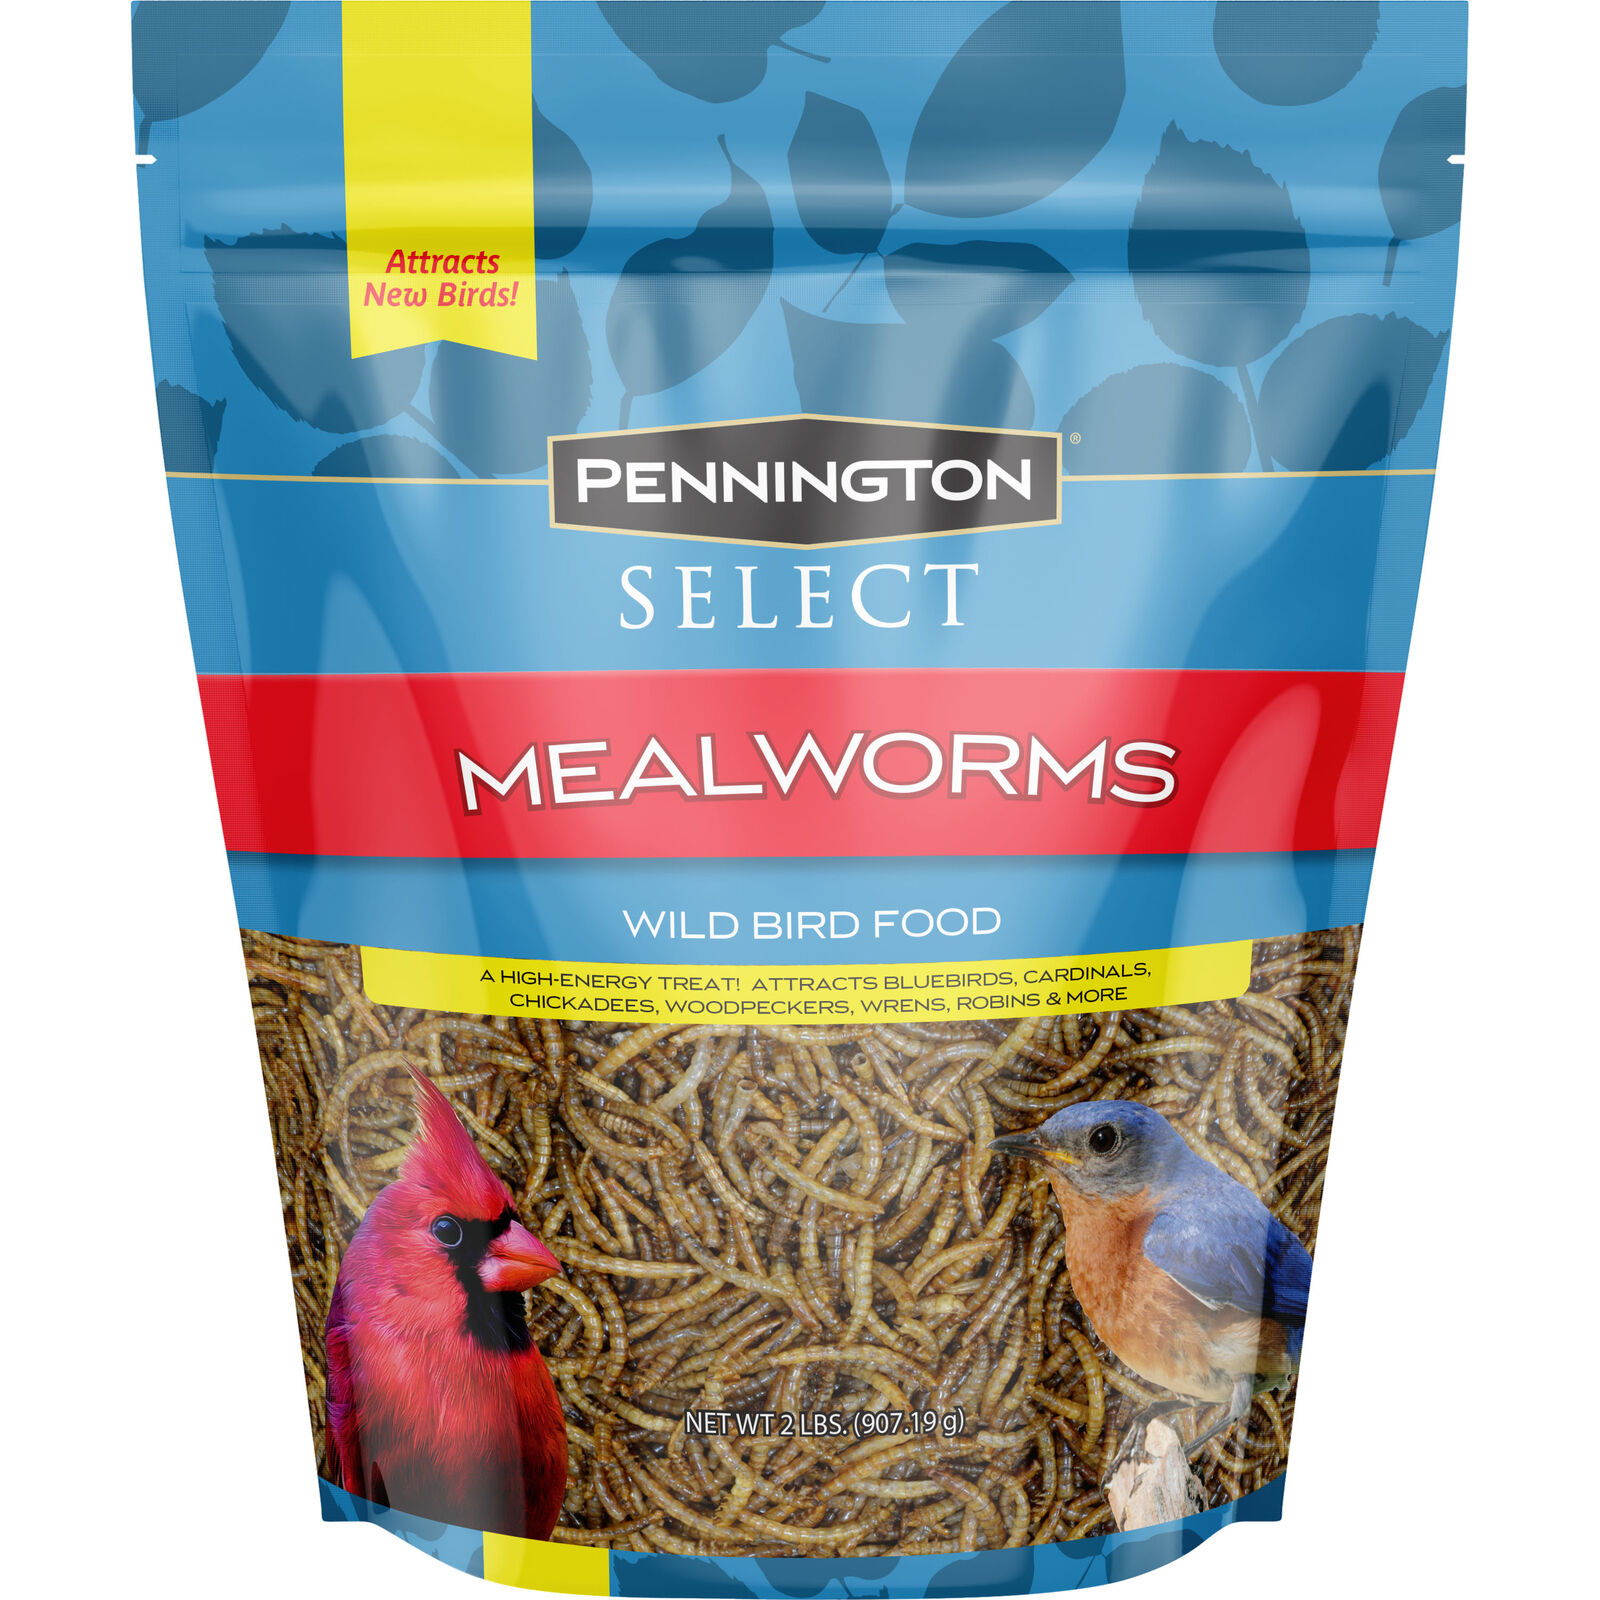 Pennington Mealworms, Bluebird and Wild Bird Food, 2 lb. Bag